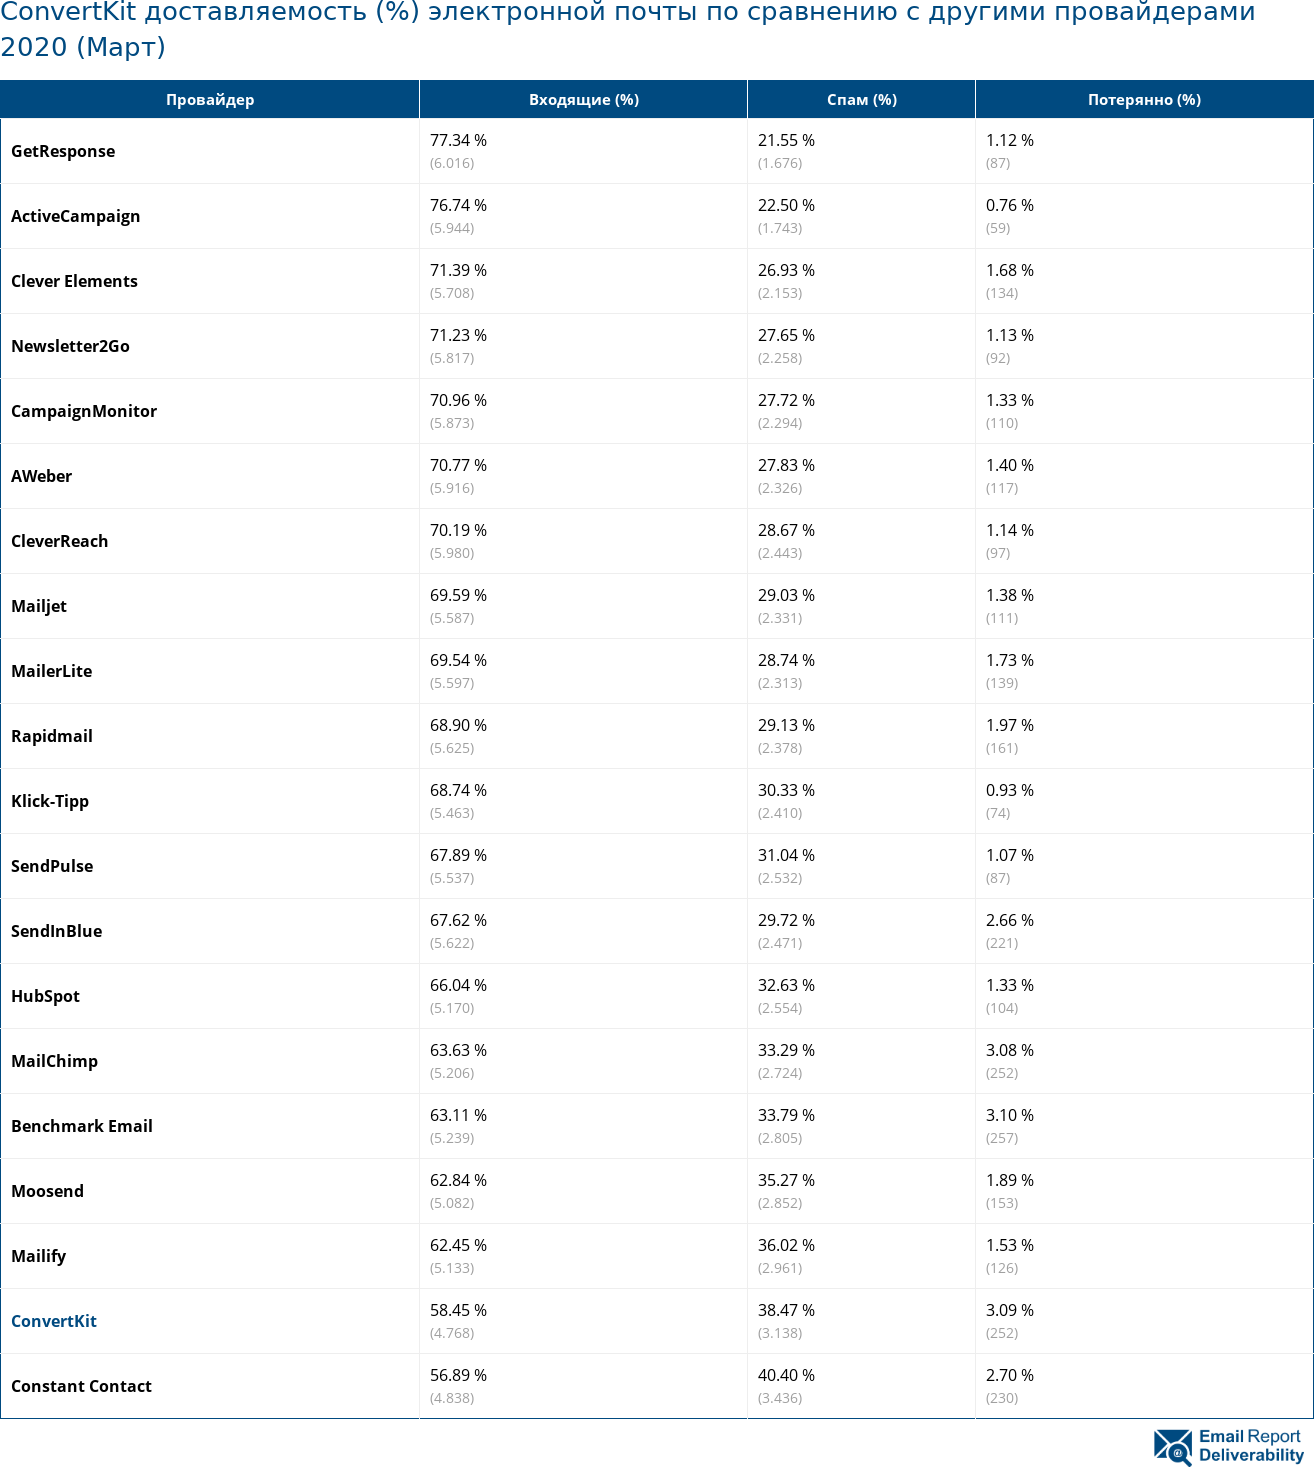 ConvertKit доставляемость (%) электронной почты по сравнению с другими провайдерами 2020 (Март)